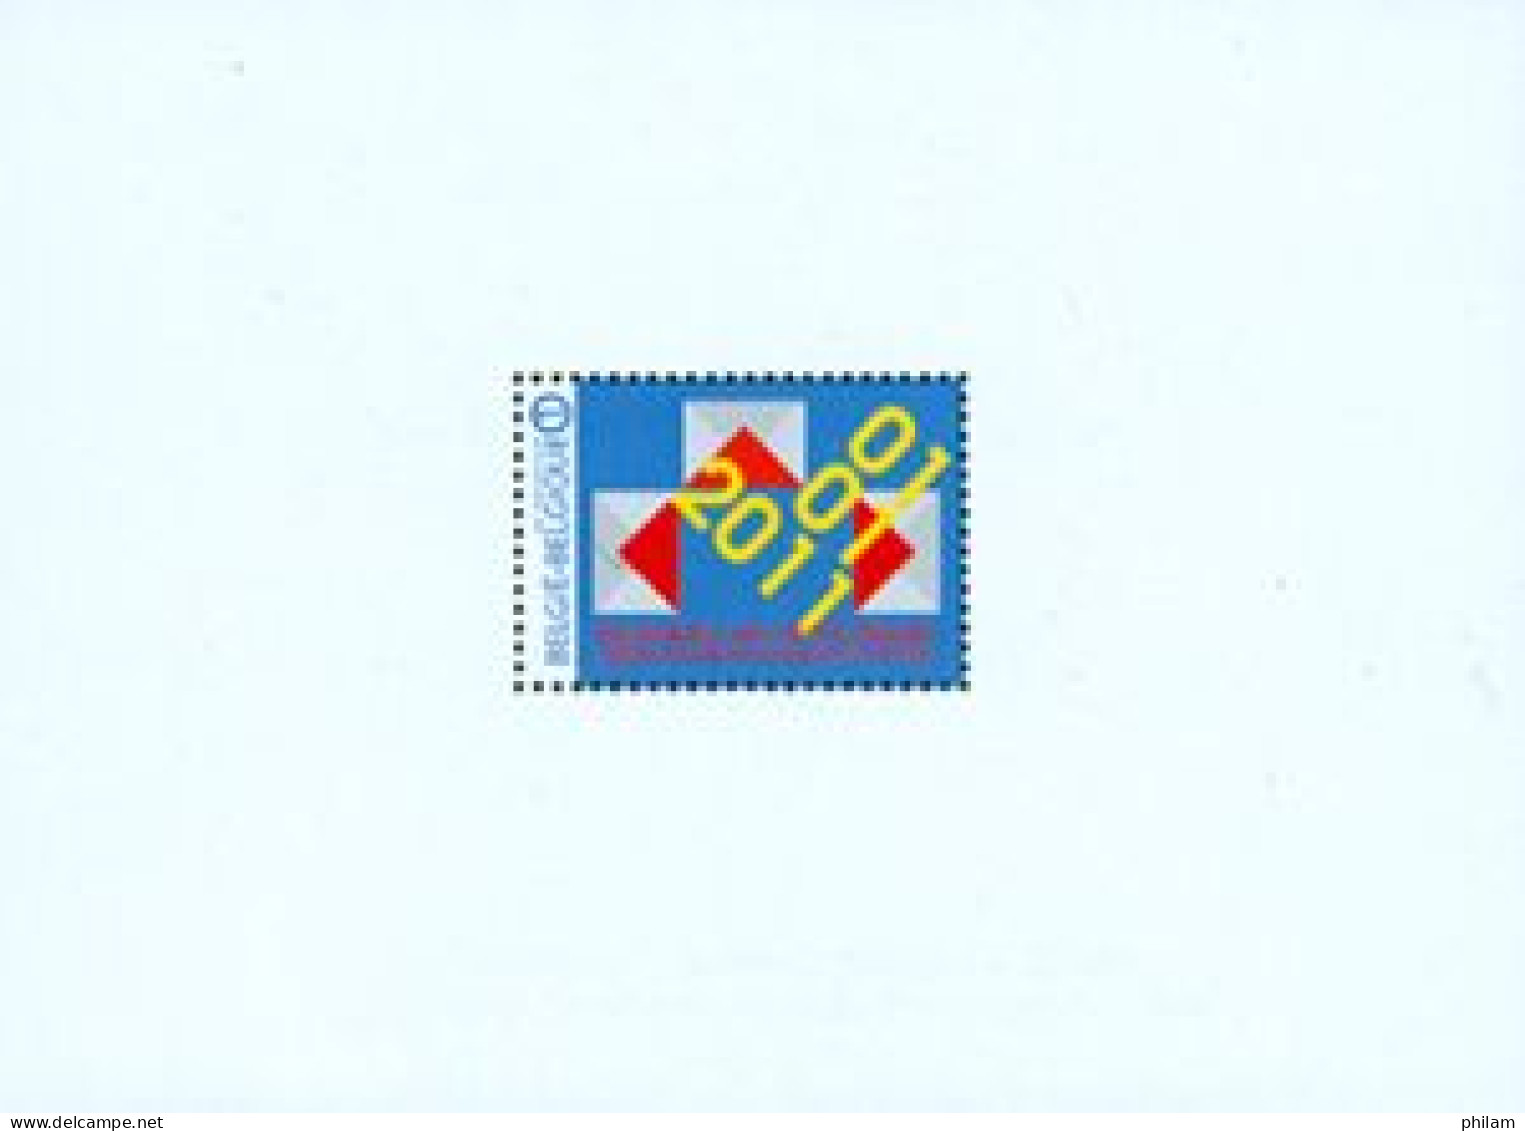 BELGIQUE 2011 - NA 26 - Libéralisation Du Marché Postal - Niet-aangenomen Ontwerpen [NA]